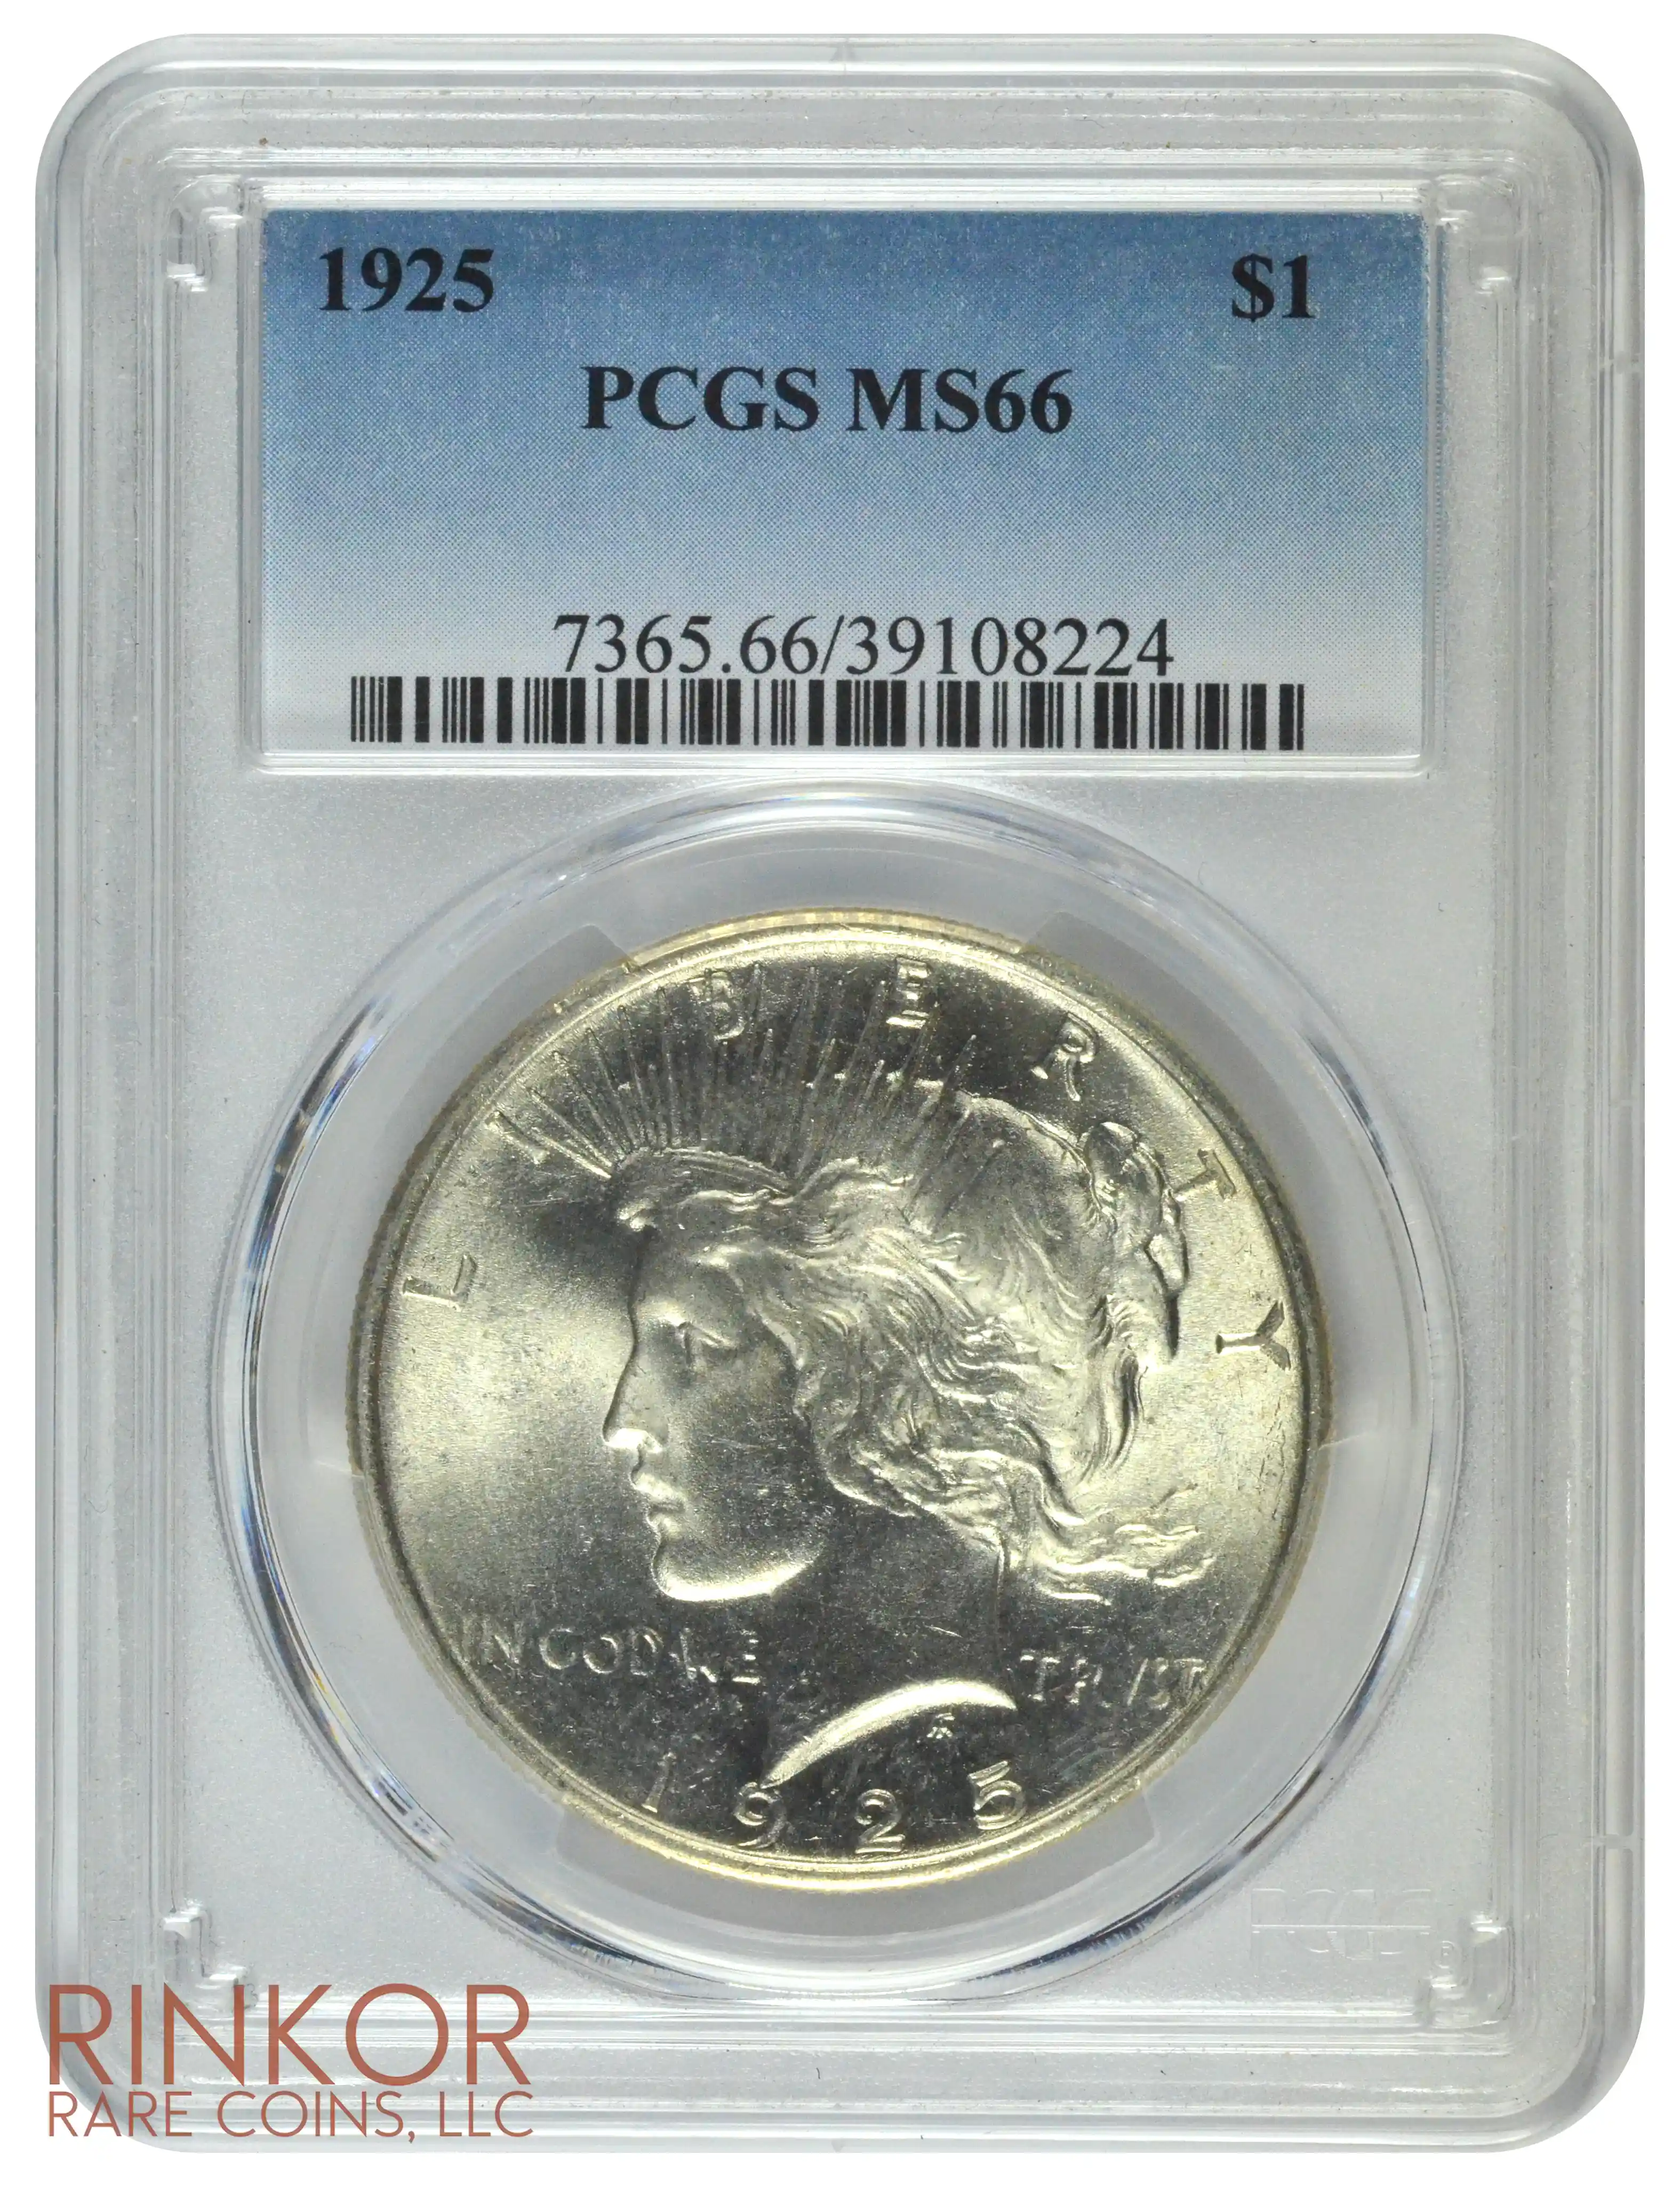 1925 $1 PCGS MS 66